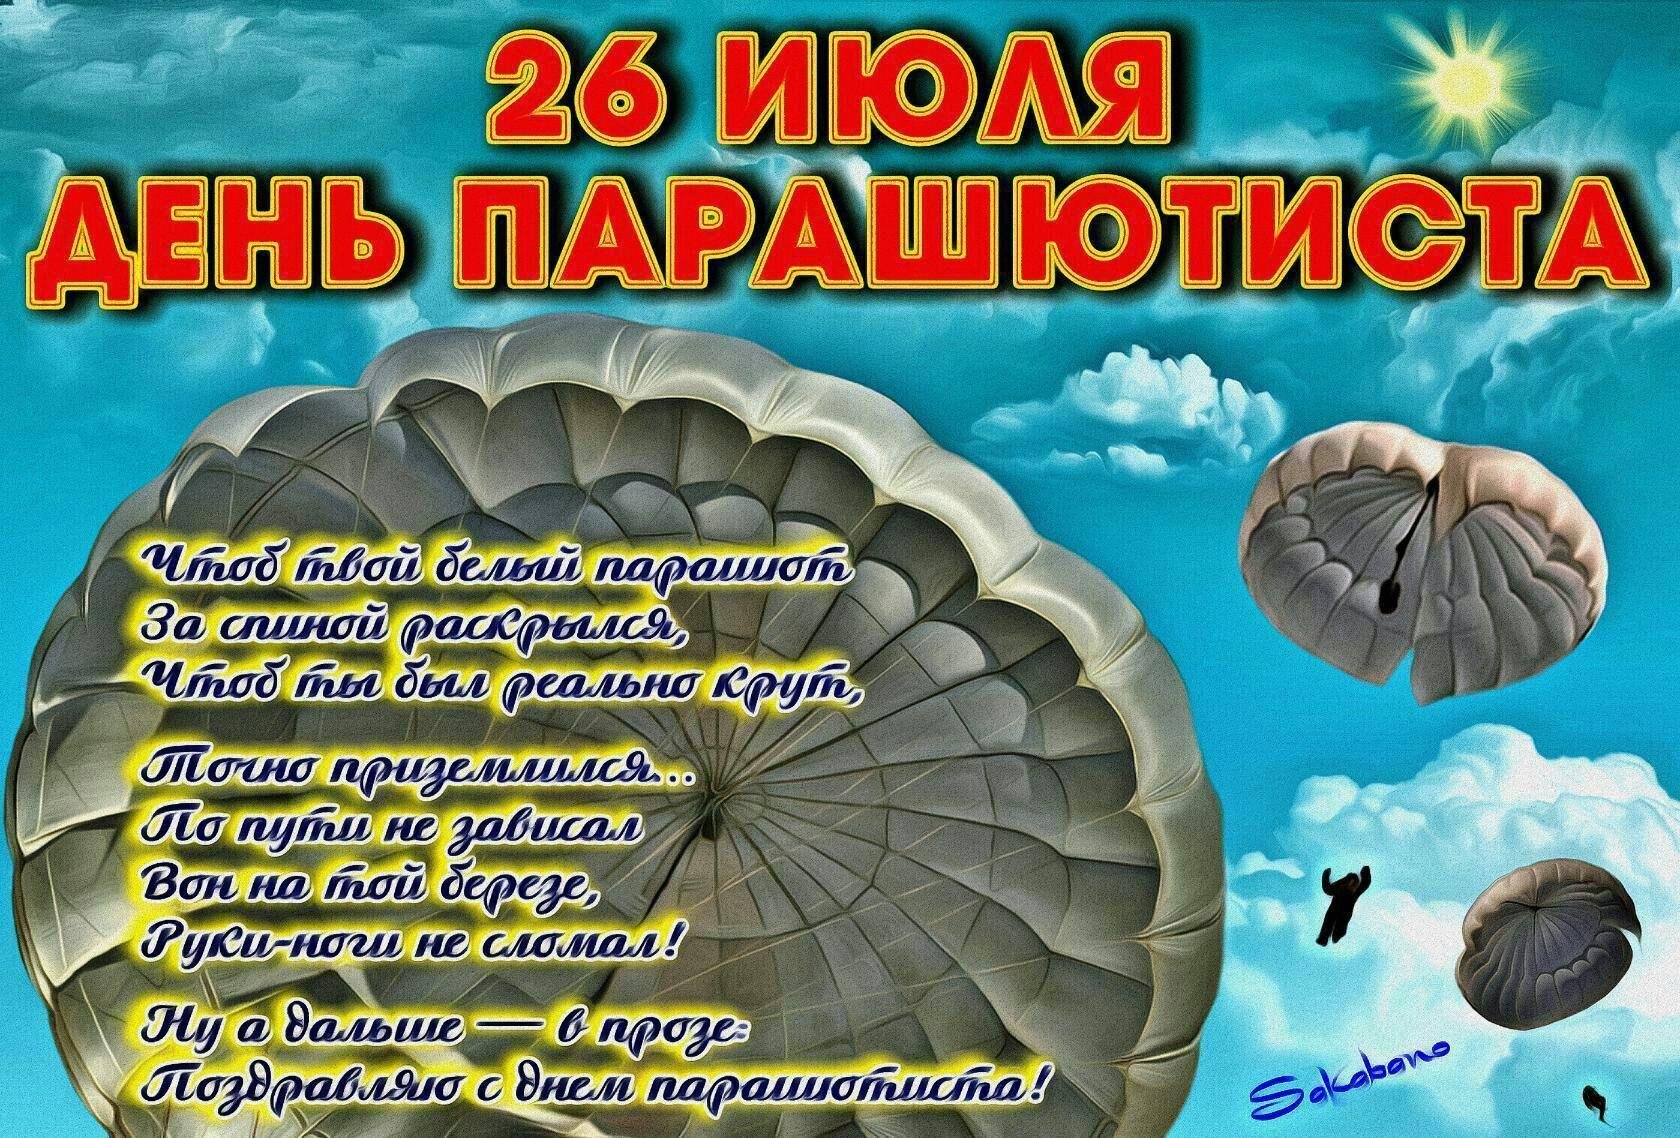 19 26 июля. День парашютиста. 26 Июля день парашютиста. День парашютиста поздравления. День парашютиста открытки.